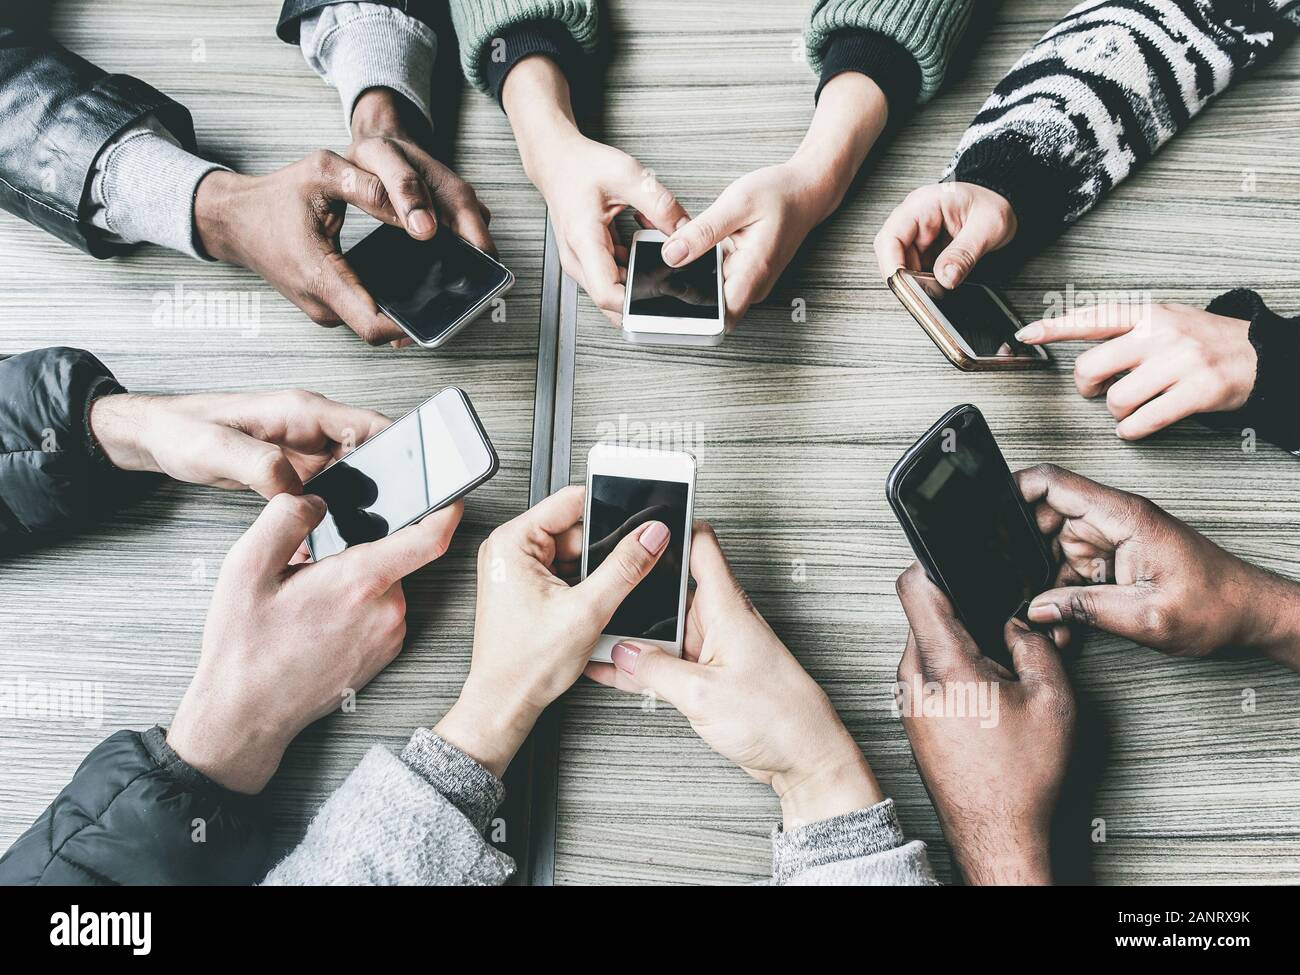 Eine Gruppe von Freunden, die zusammen mit Smartphones Spaß haben - Nahaufnahme von Hands Social Networking mit Mobiltelefonen - Technologie- und Telefonsuchkonzept Stockfoto